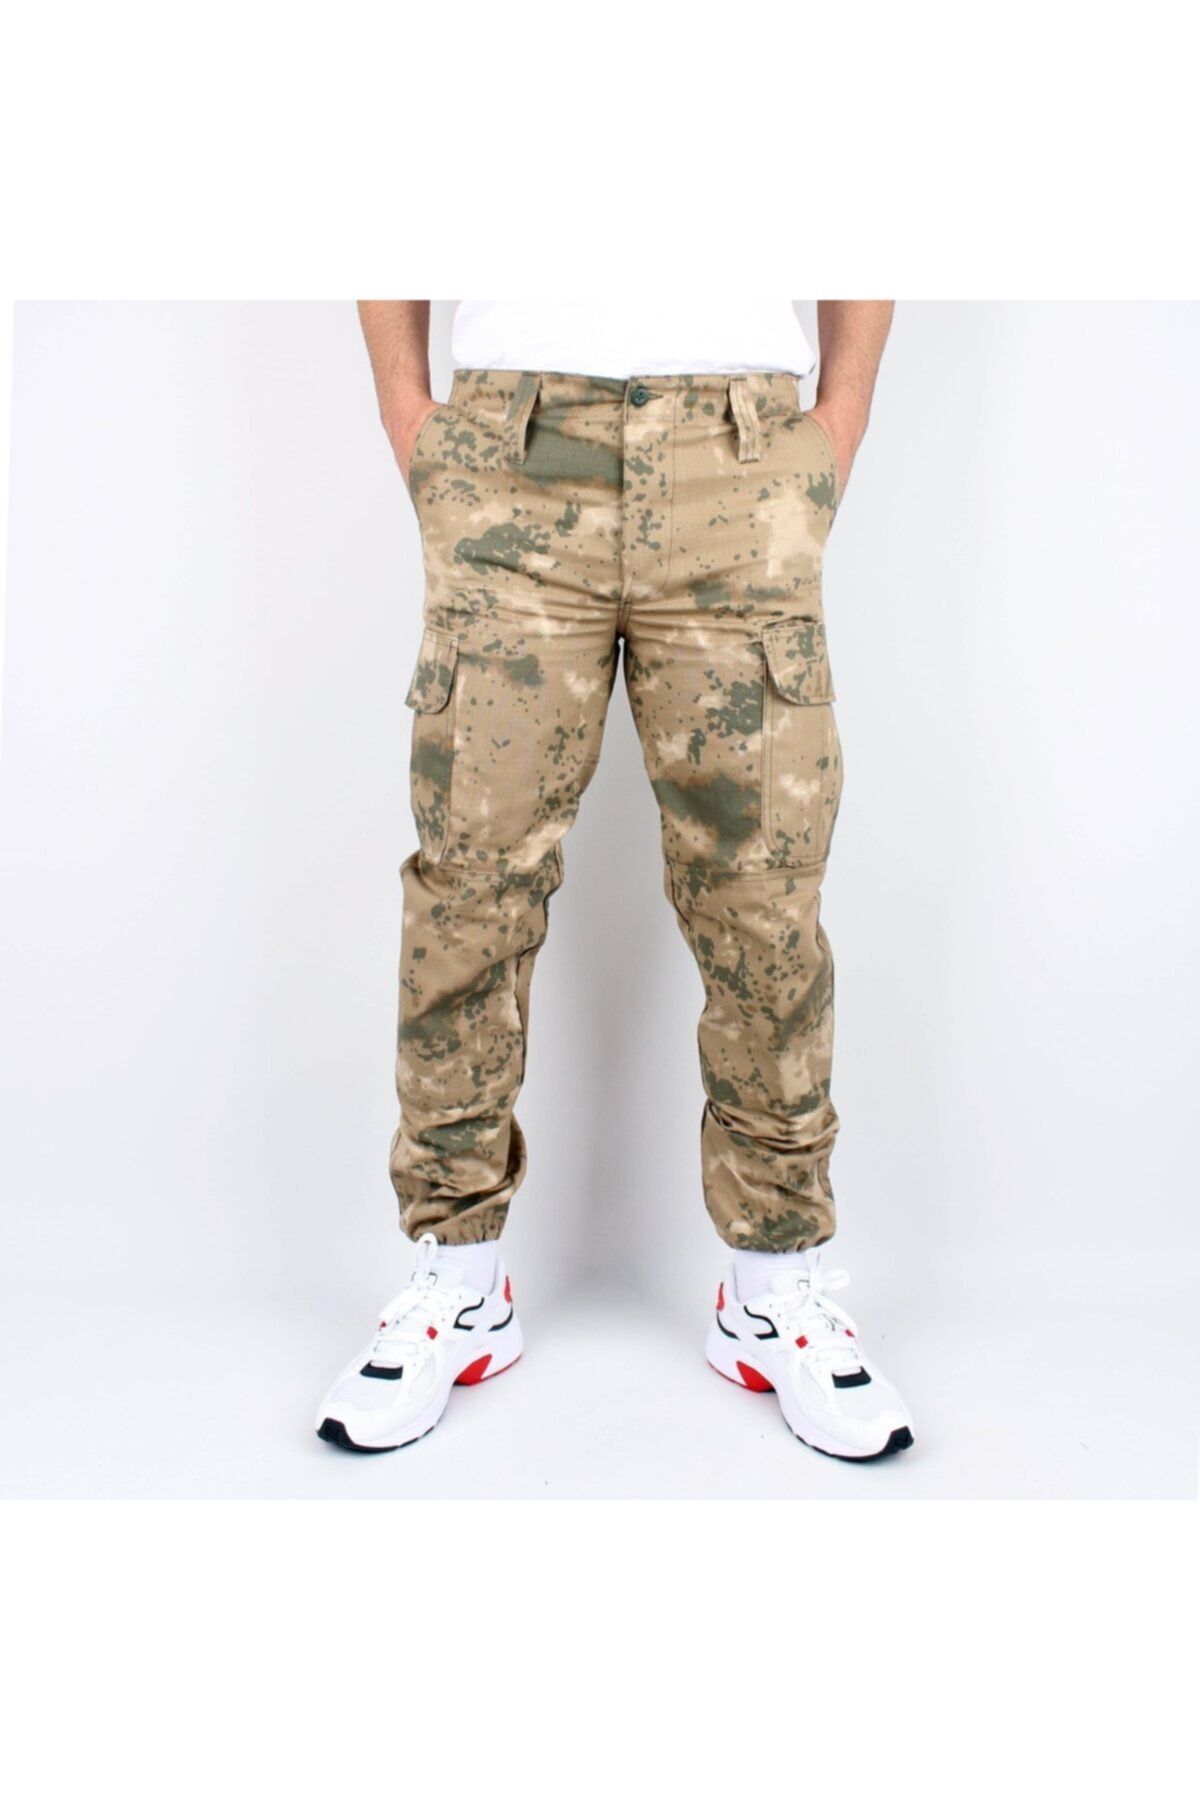 Silyon Askeri Giyim Erkek Asker Tip Kamuflaj Kargo Pantolon